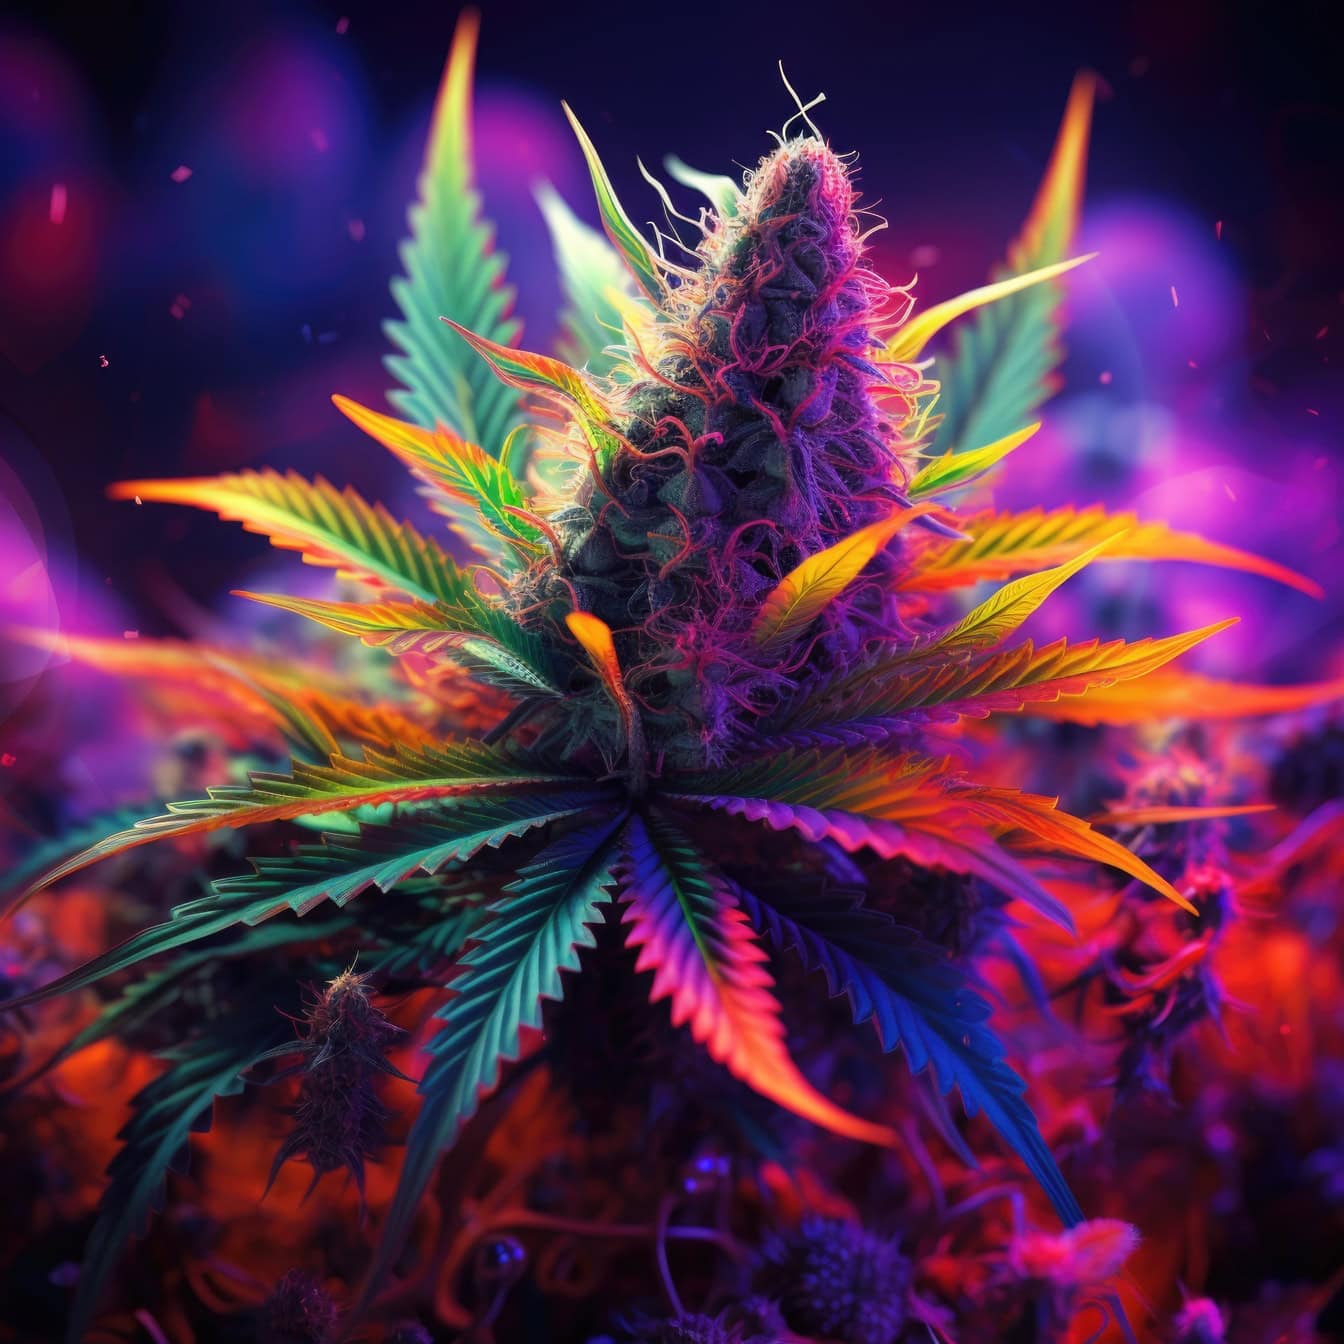 En levende grafikk av en cannabisurt i psykedelisk popkunststil